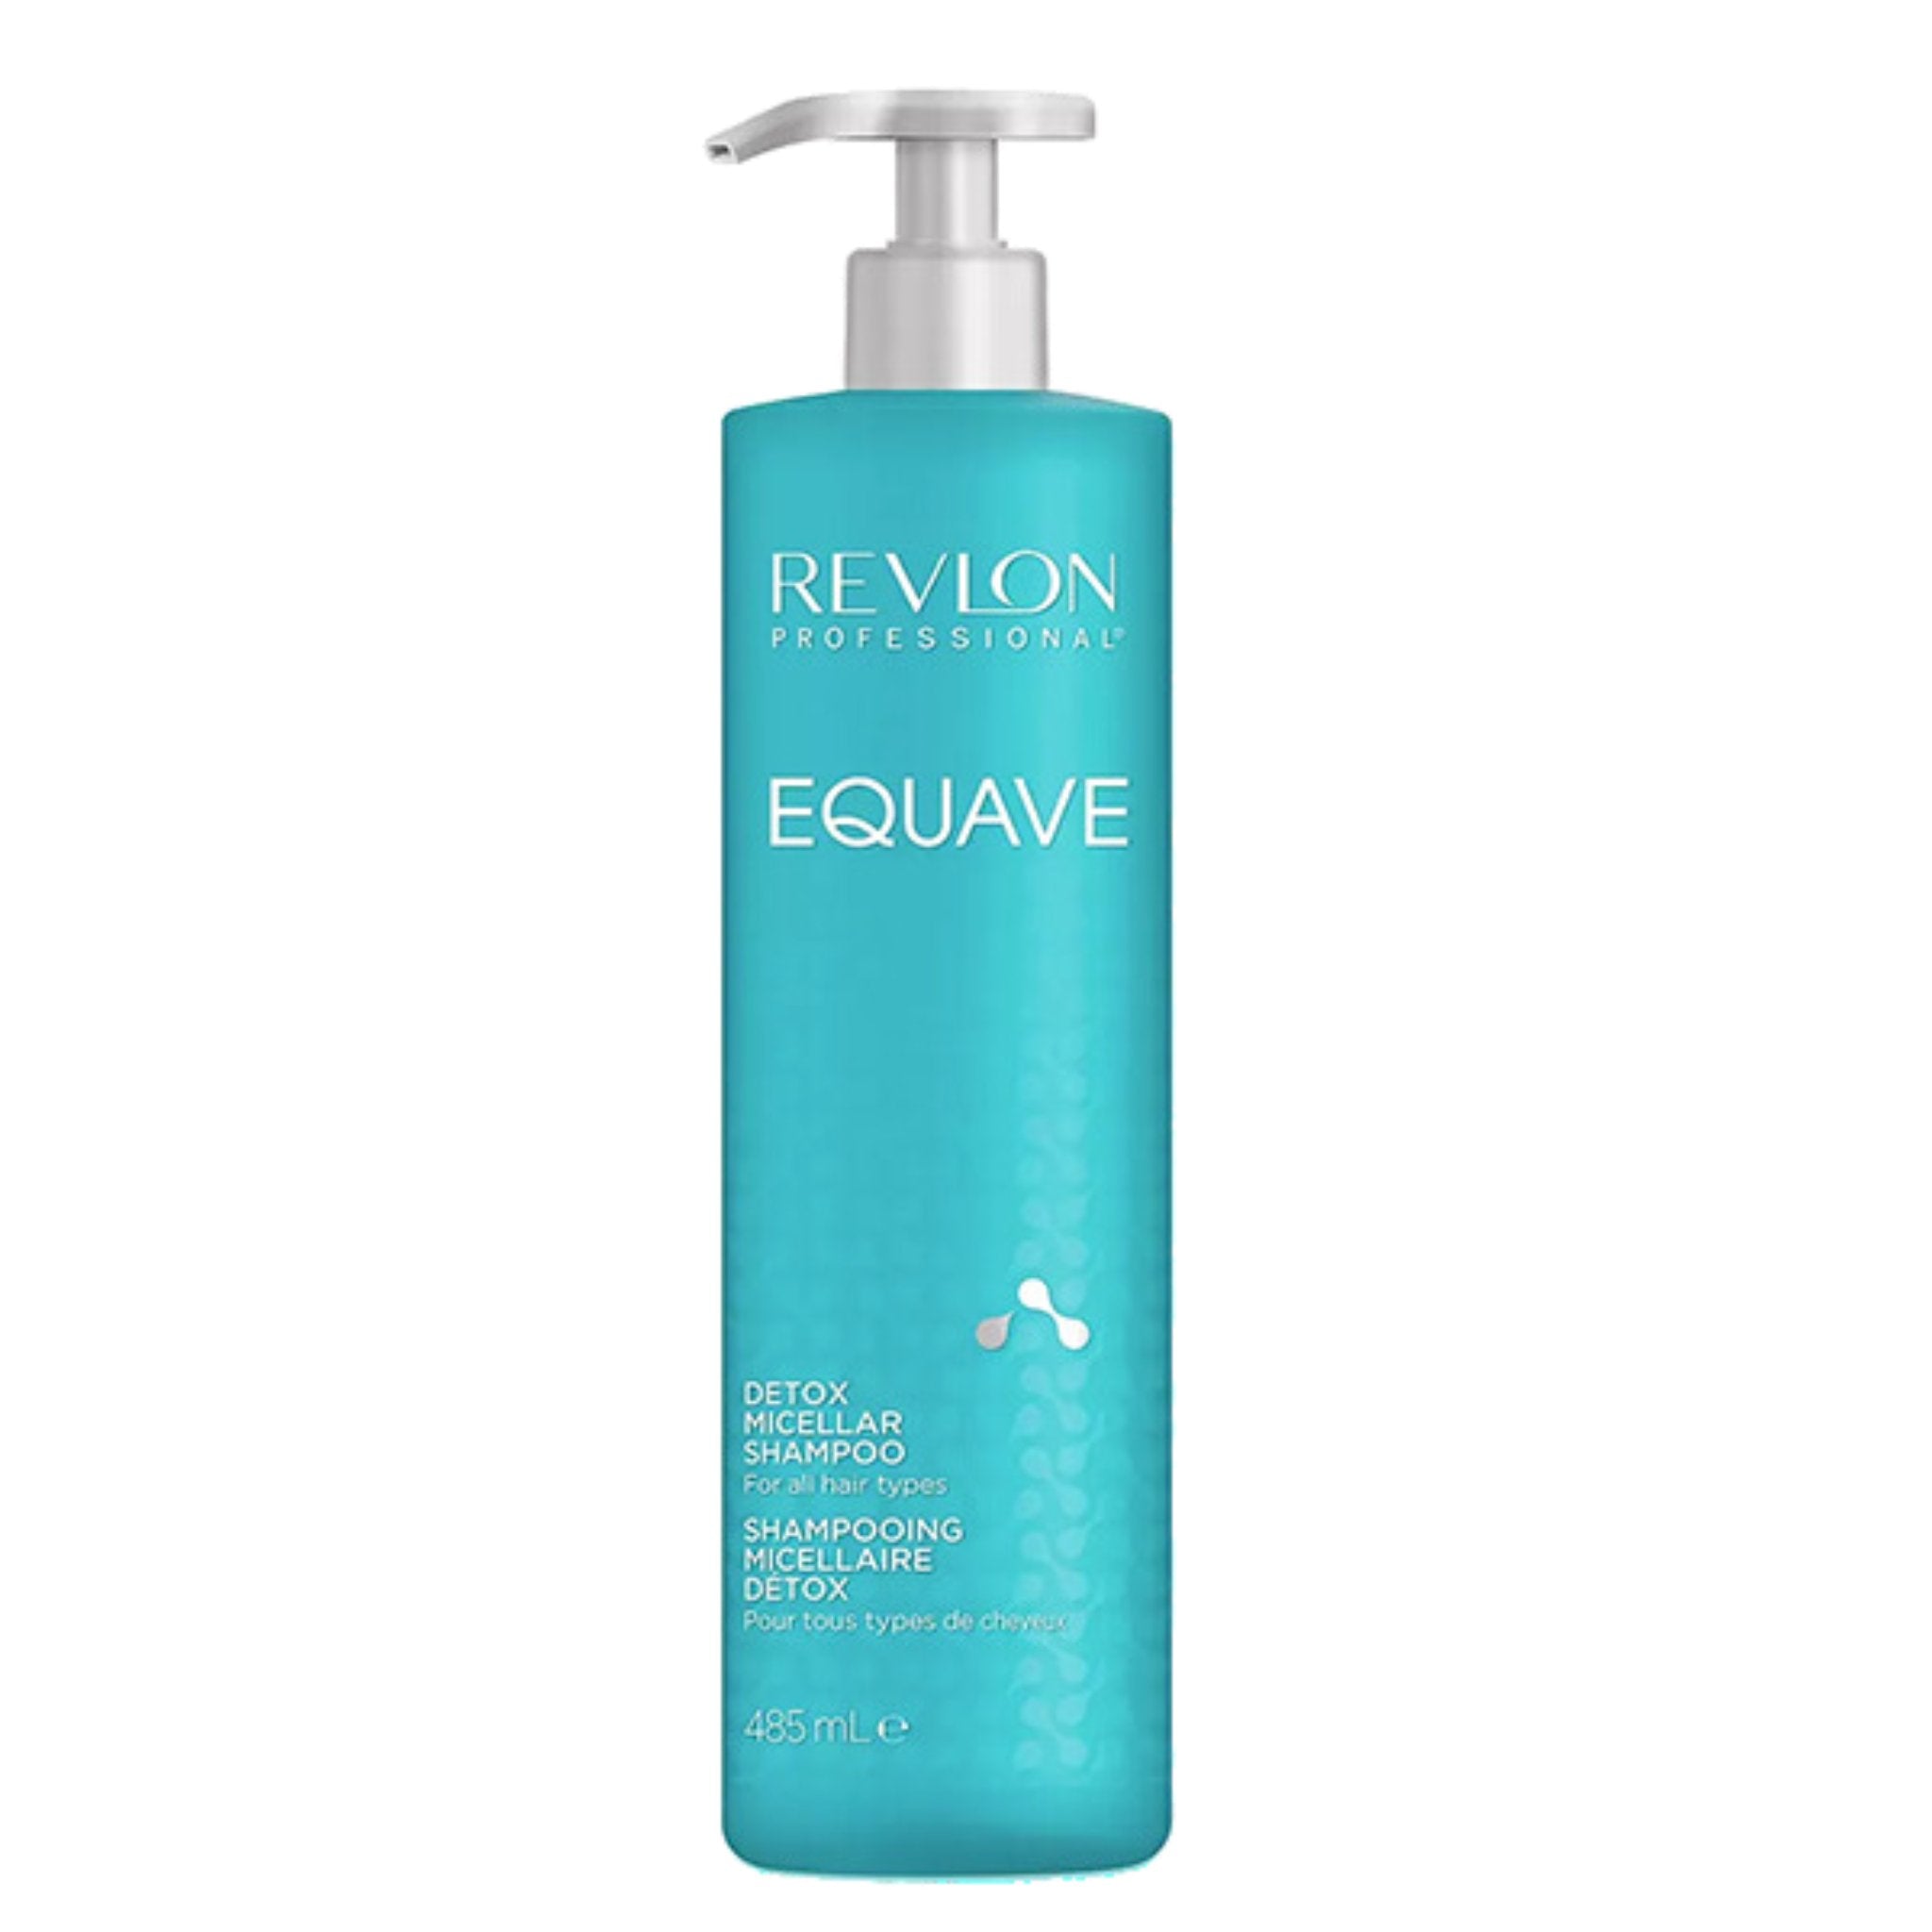 Revlon. Shampoing Micellaire Détox Equave - 485 ml - Concept C. Shop